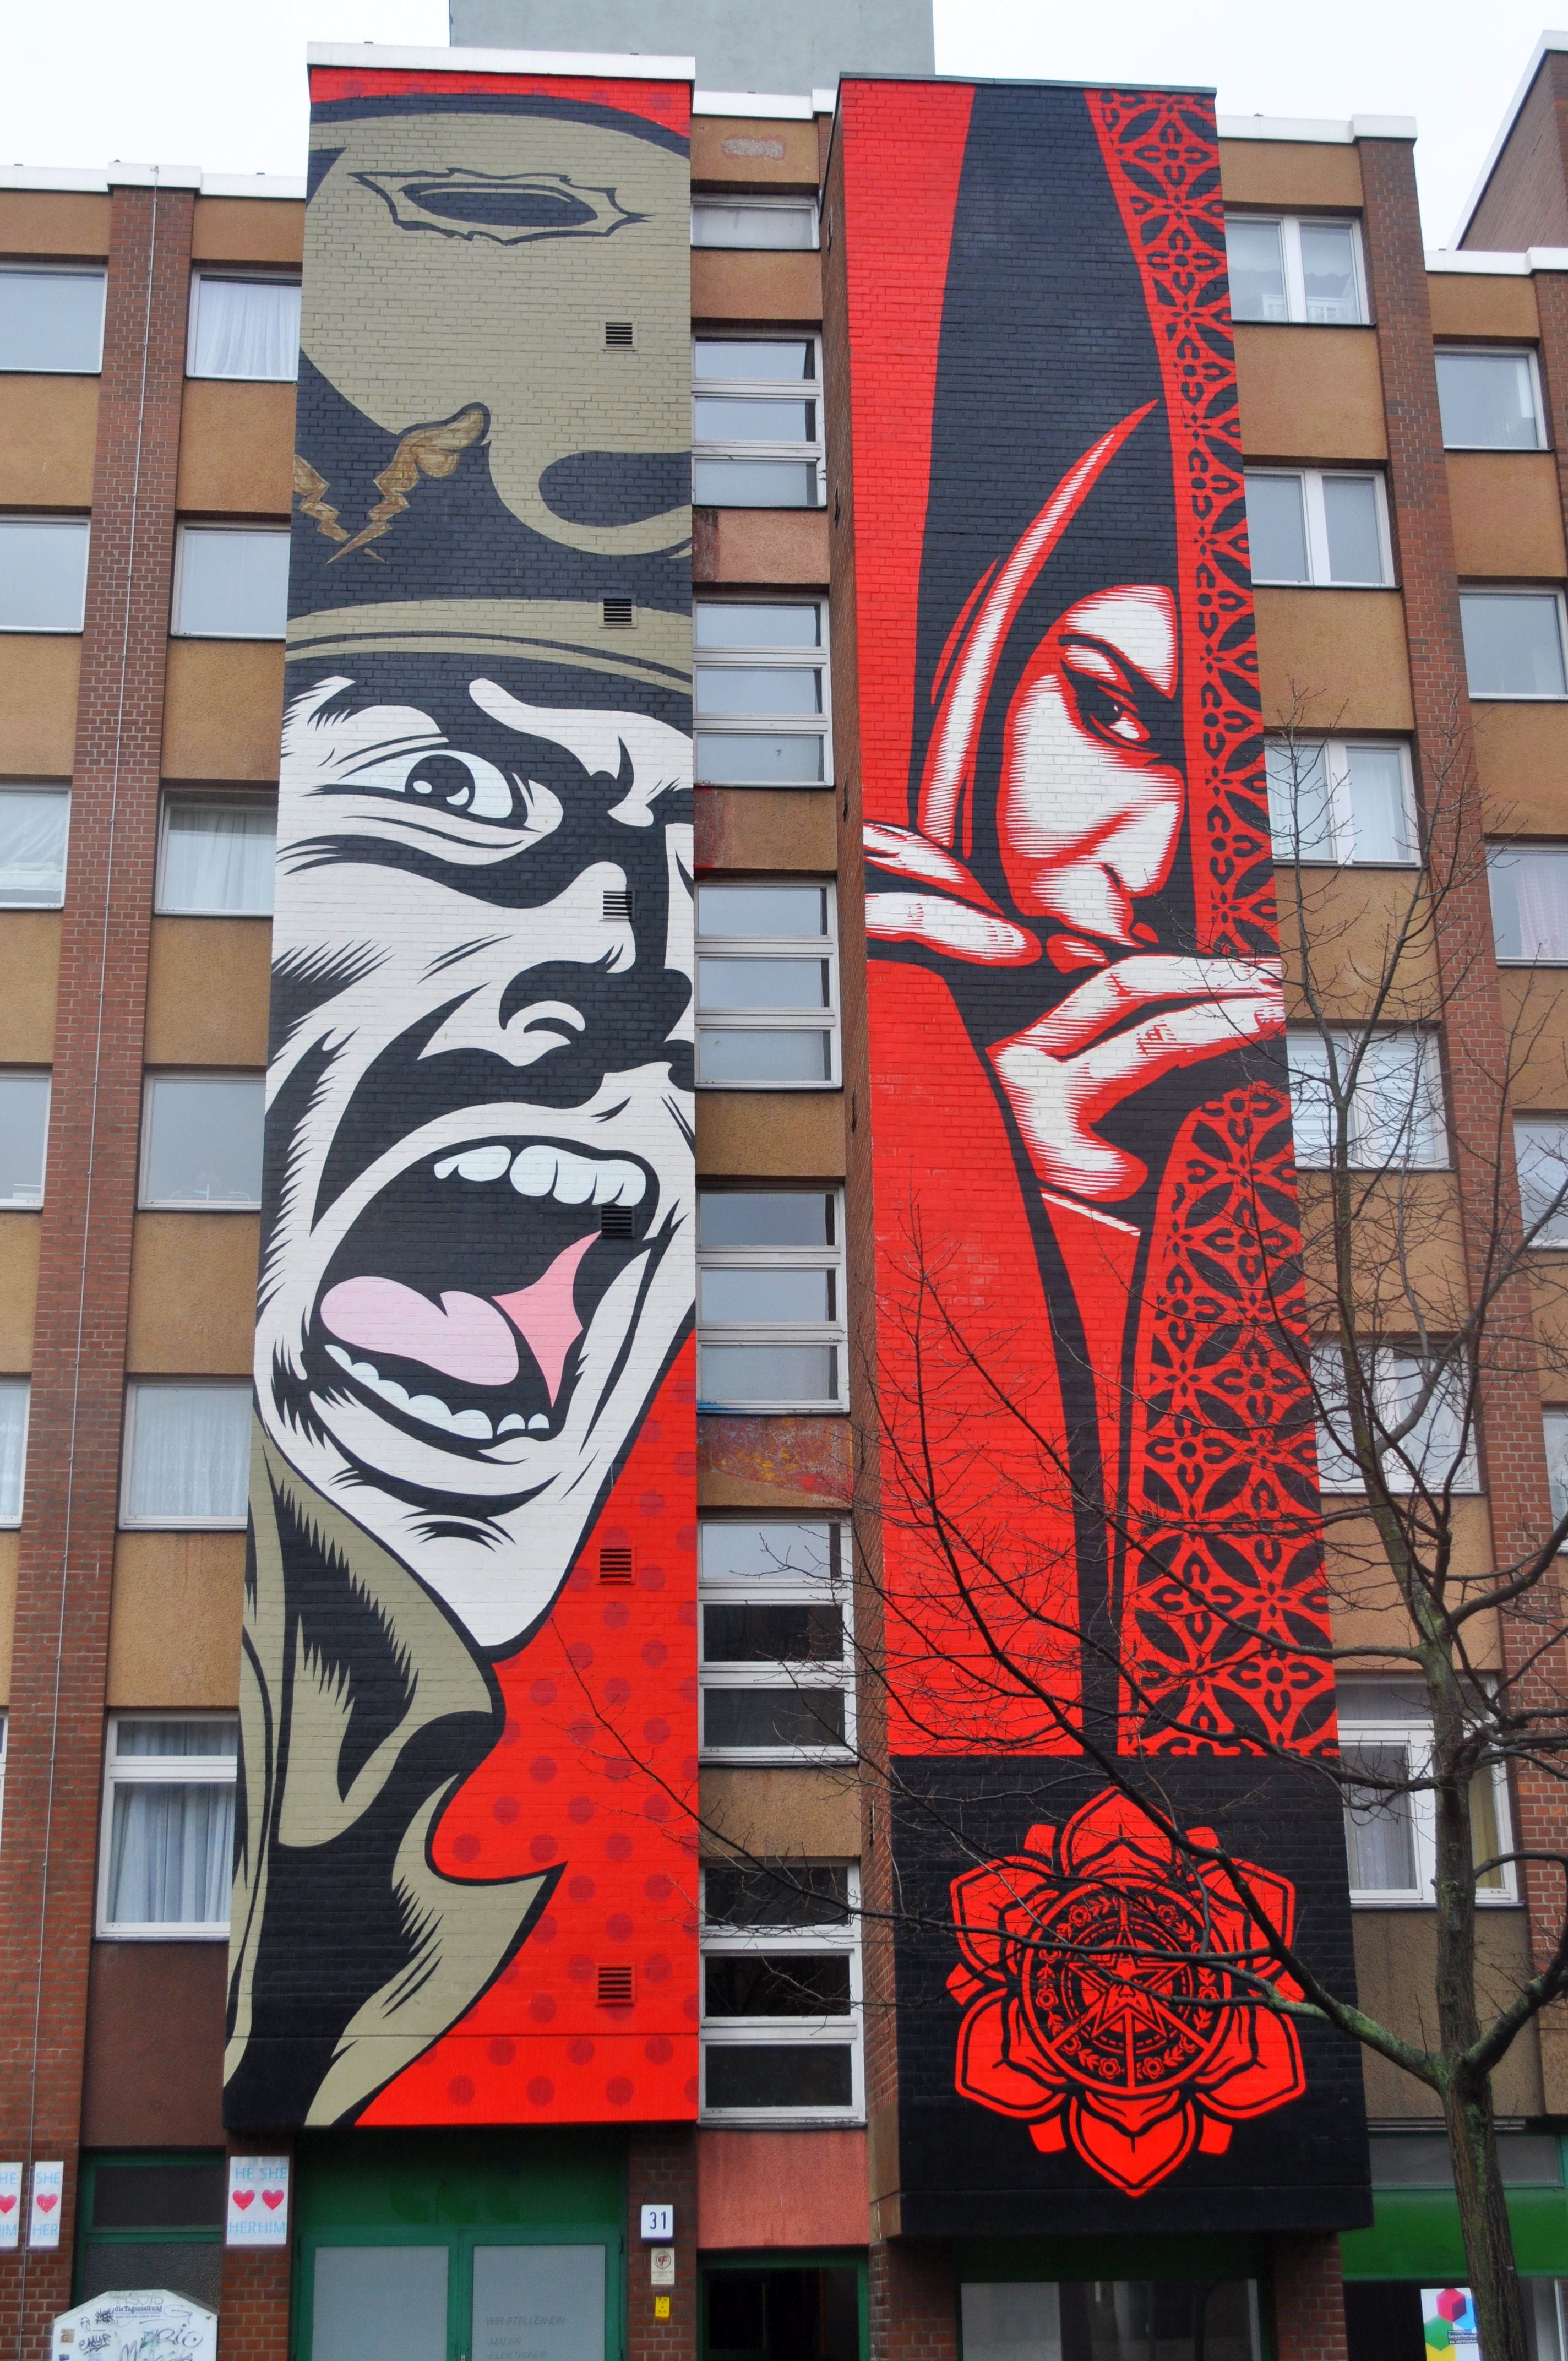 Graffiti 4736  by the artist DFace captured by elettrotajik in Berlin Germany